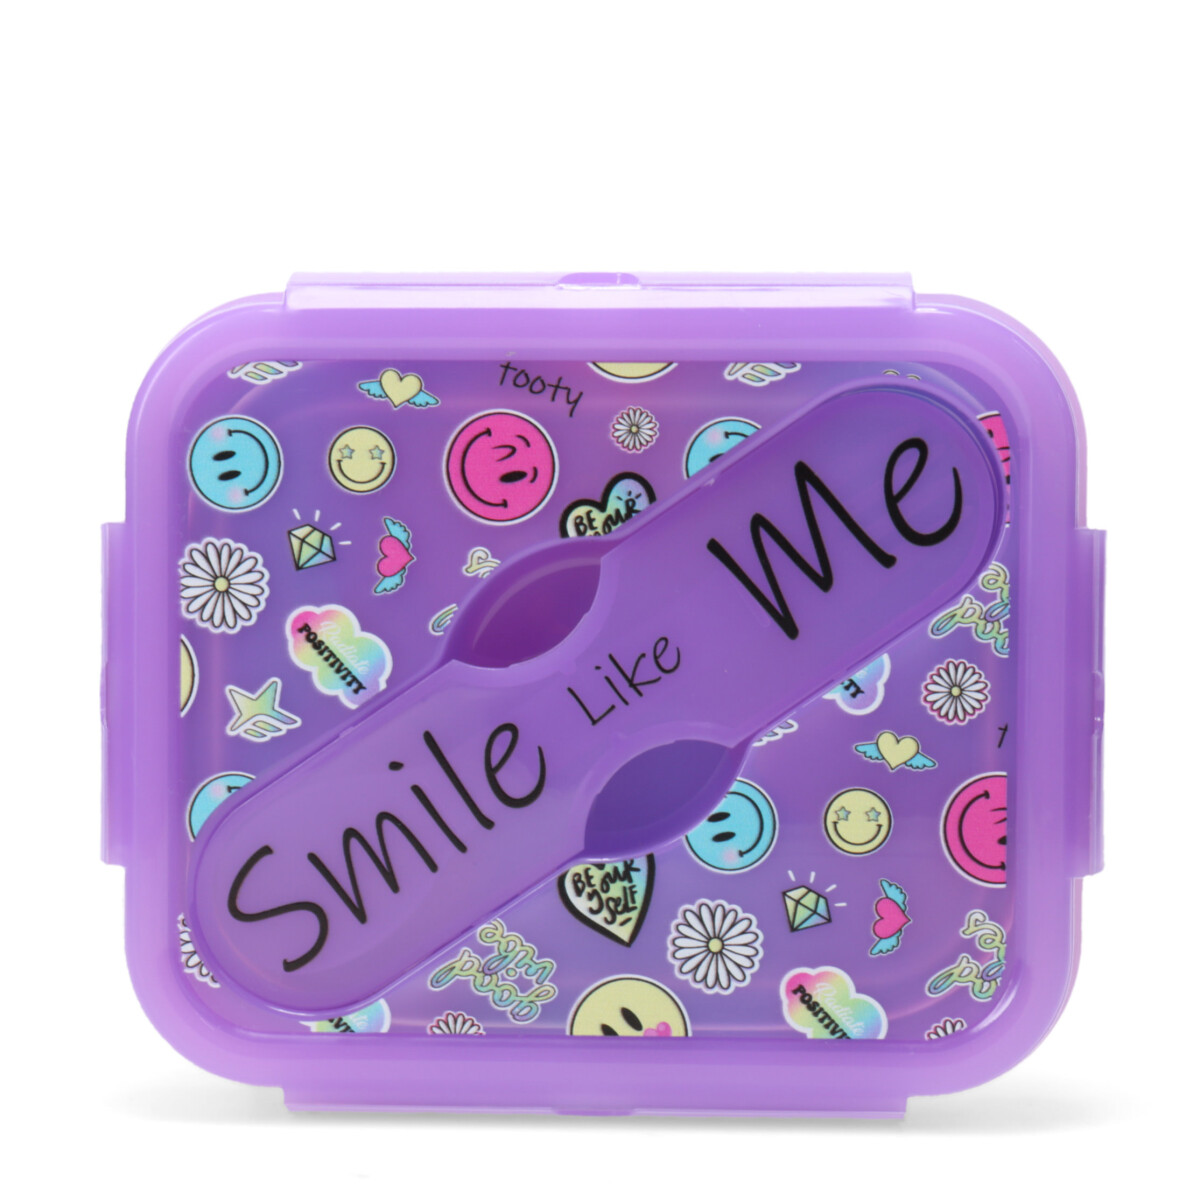 Lanchera Plegable Emojis Footy - Violeta/Multicolor 